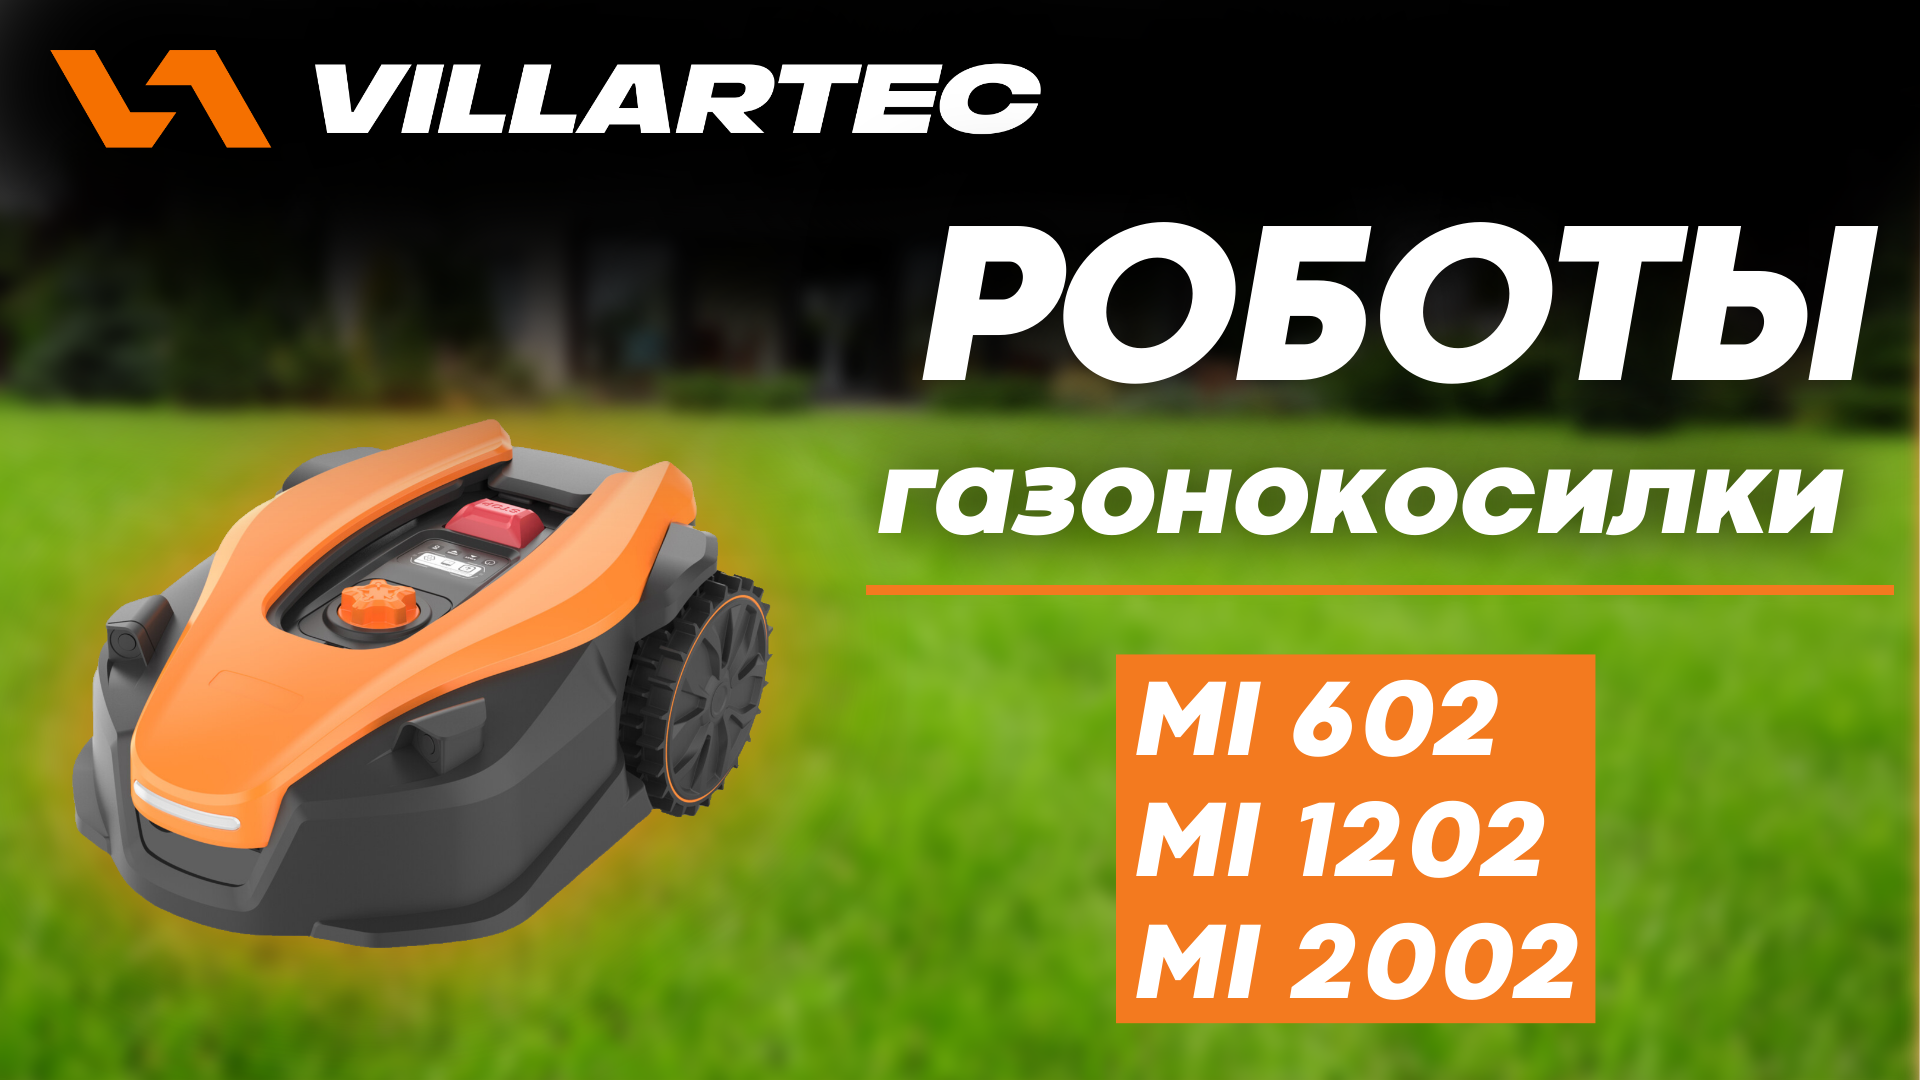 Роботы-газонокосилки VILLARTEC MI 602, MI 1202, MI 2002